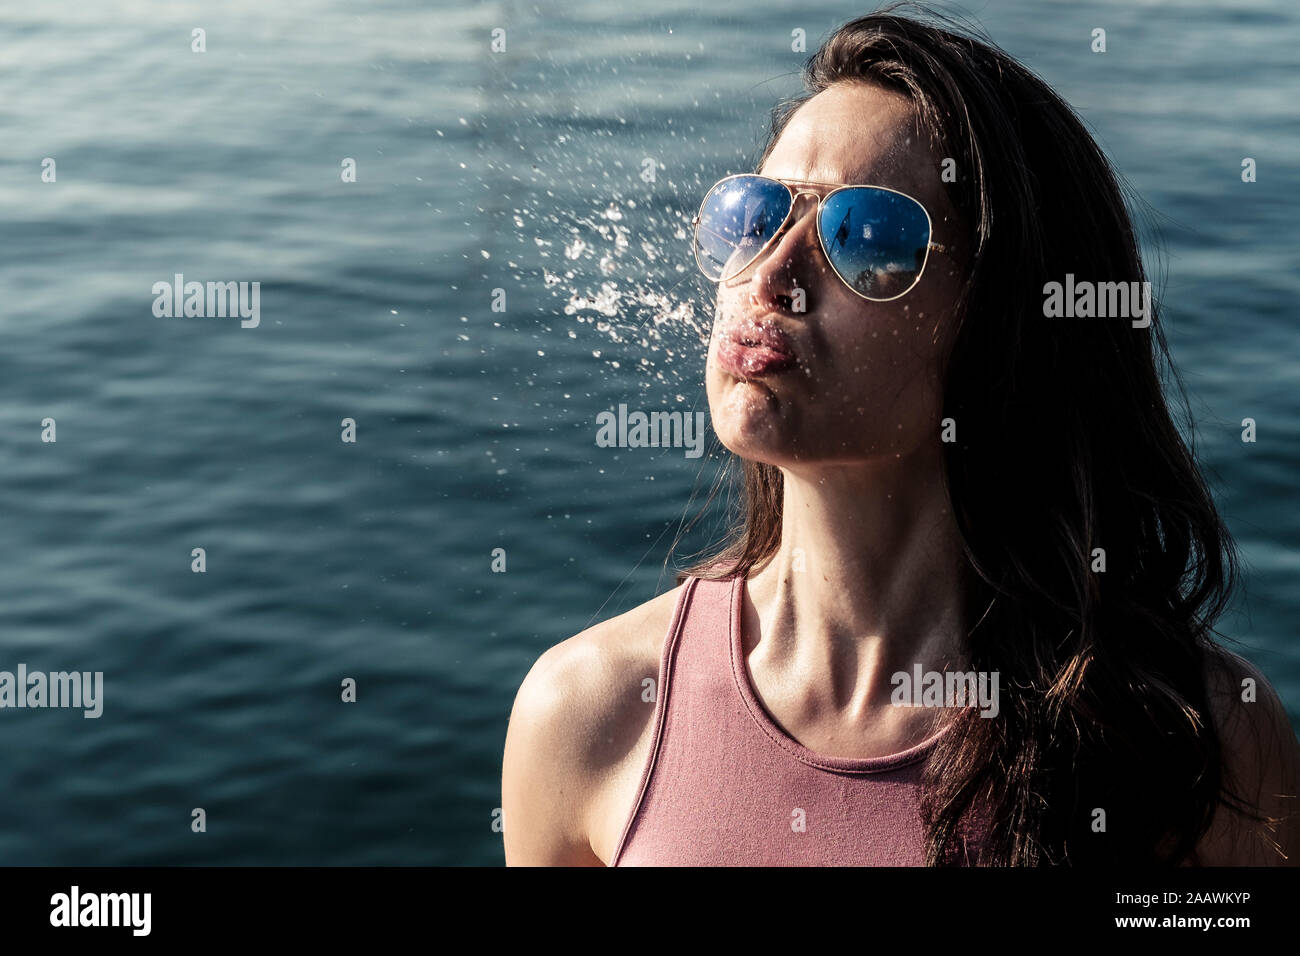 Ritratto di giovane donna che indossa gli occhiali da sole sbuffare acqua Foto Stock